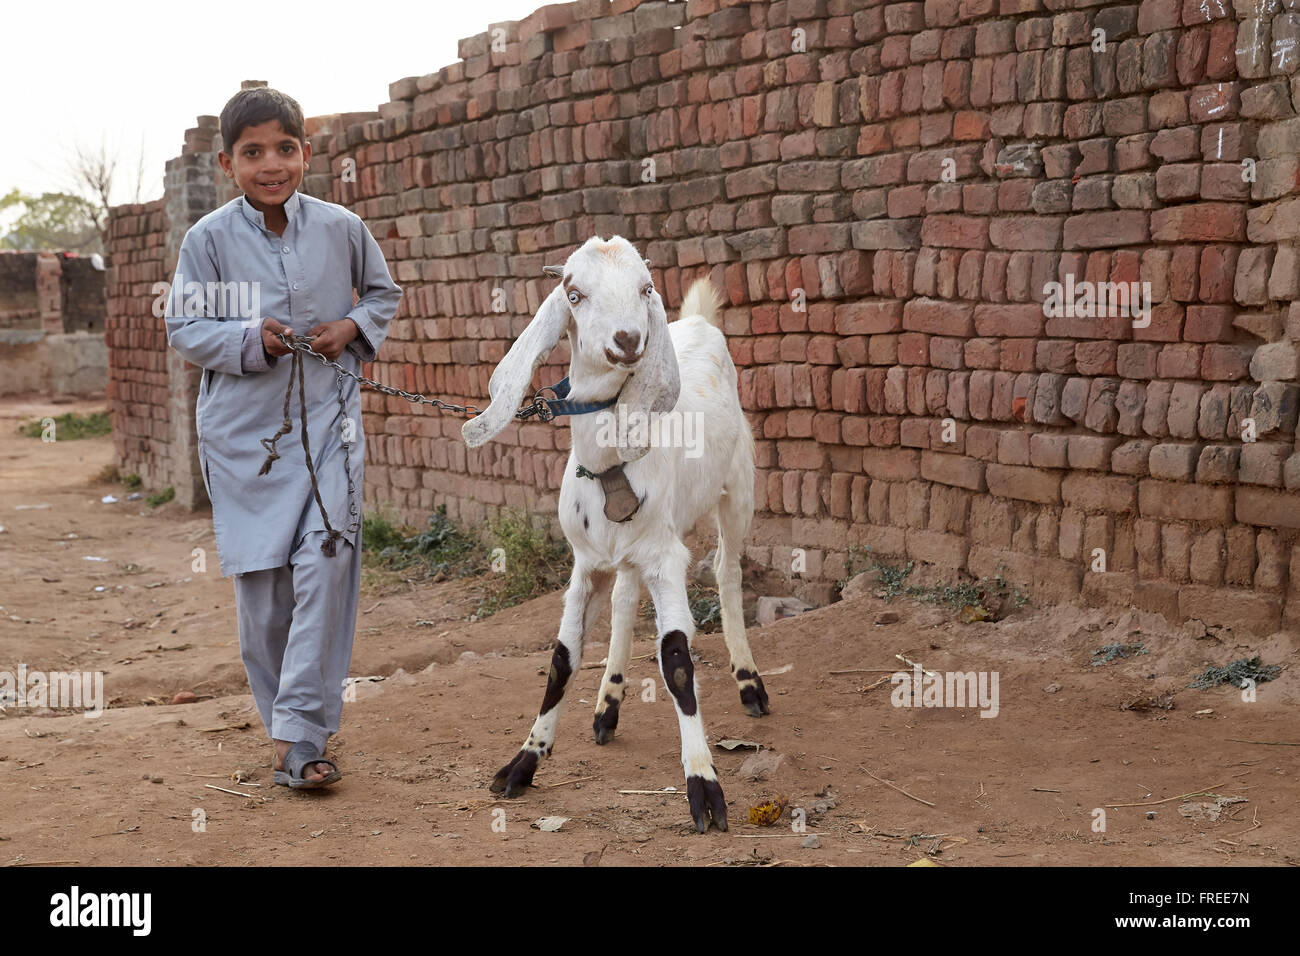 Los niños cabra líder en una correa, Mahey, Pakistán Foto de stock